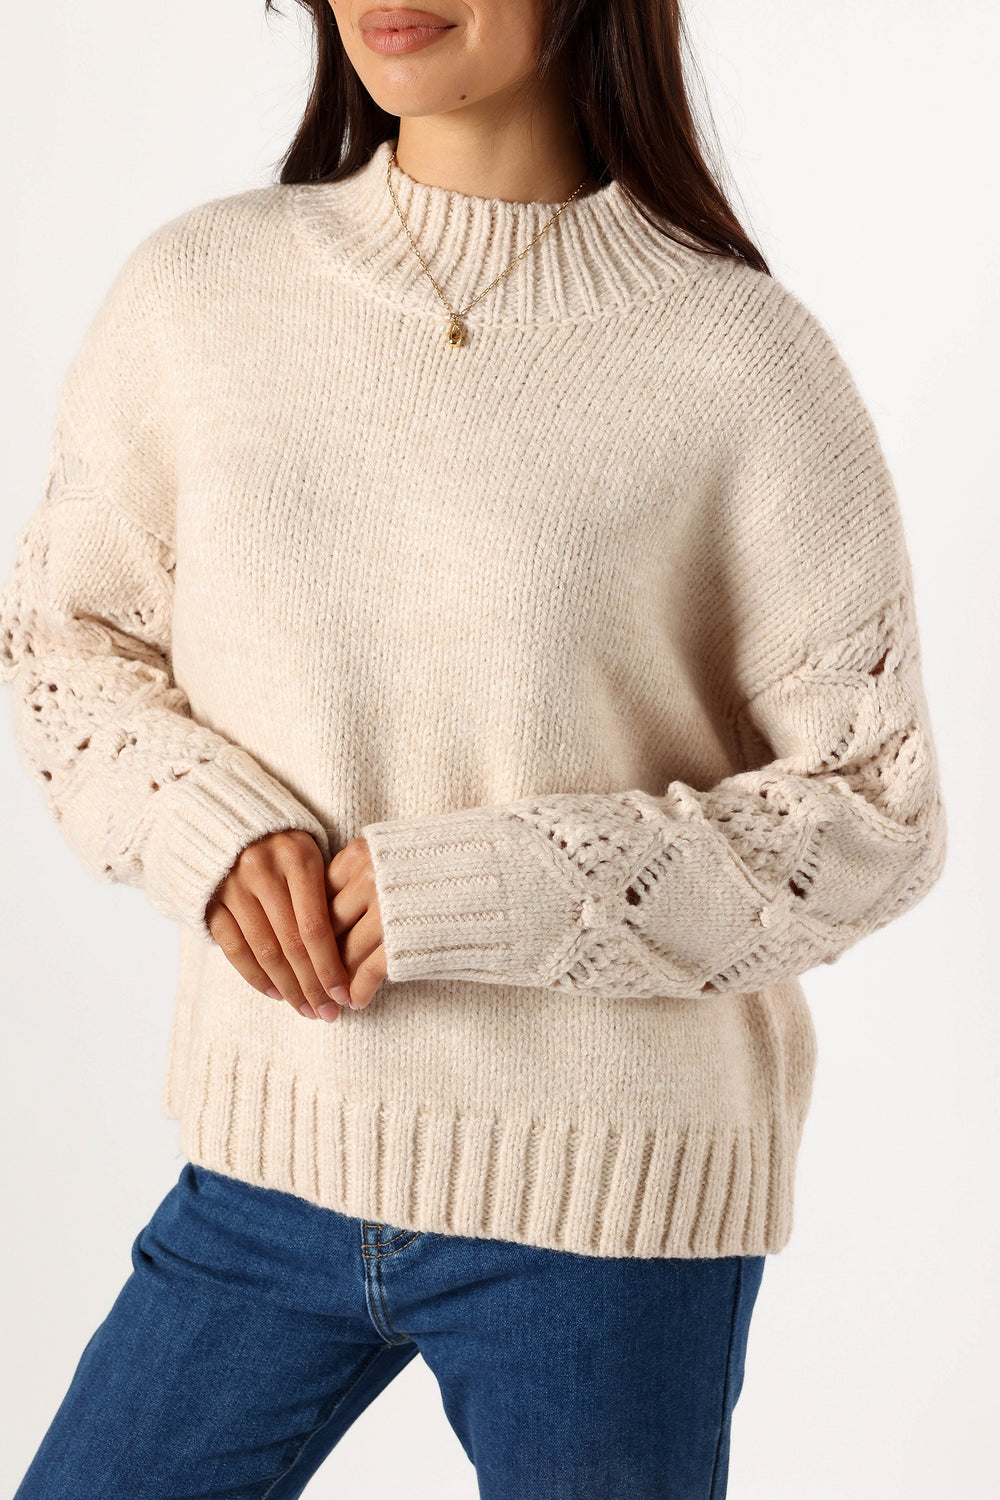 KNITWEAR @Rebekah Crochet Sleeve Knit Sweater - Cream